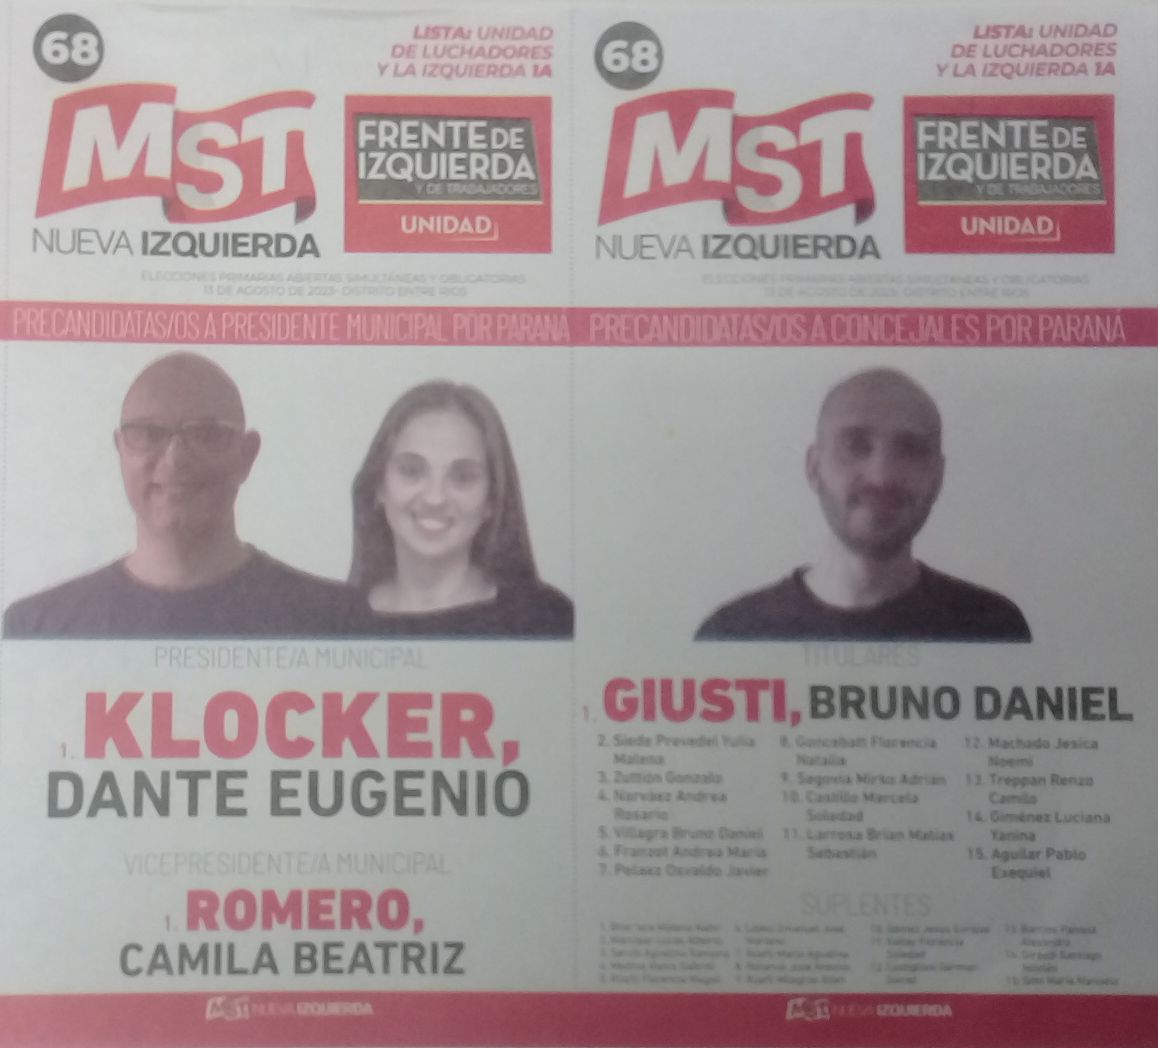 Lista 68: MST Nueva Izquierda - Dante Eugenio Klocker.